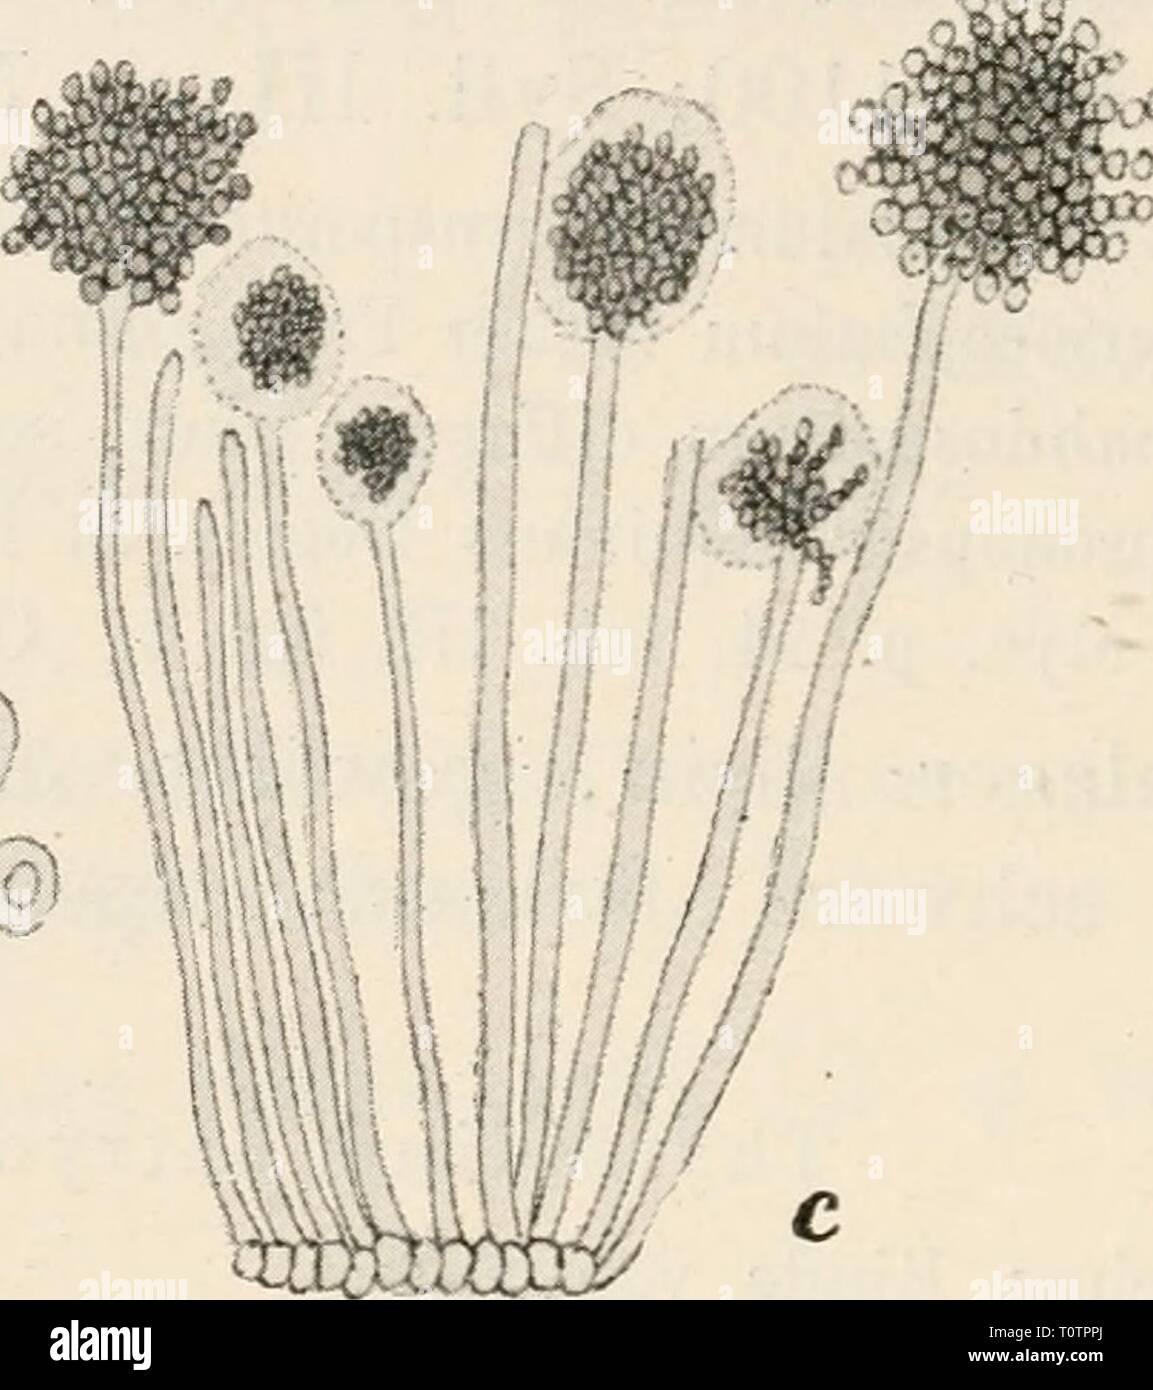 Dr L Rabenhorst's Kryptogamen-Flora von Dr. L. Rabenhorst's Kryptogamen-Flora von Deutschland, Oesterreich und der Schweiz  drlrabenhorstskr0107rabe Year: 1903  ra . d    Thyrsidium hedericolum (De Notar.) Uur. et Mont. a. Ein Eindenstückchen von Hedera Helix mit dem Pilze in natür- licher Grösse. b. Ein schwach vergrössertes, senkrecht durchschnittenes Sporenlager. c. Ein sehr stark vergrösserter Theil des Hymeniums mit Sporen- trägern mit zwei älteren und vier jüngeren Sporenköpfchen, deren Sporenketten noch von Schleim umhüllt sind. d. Eine sehr stark vergrösserte Sporenkette und sechs noch Stock Photo